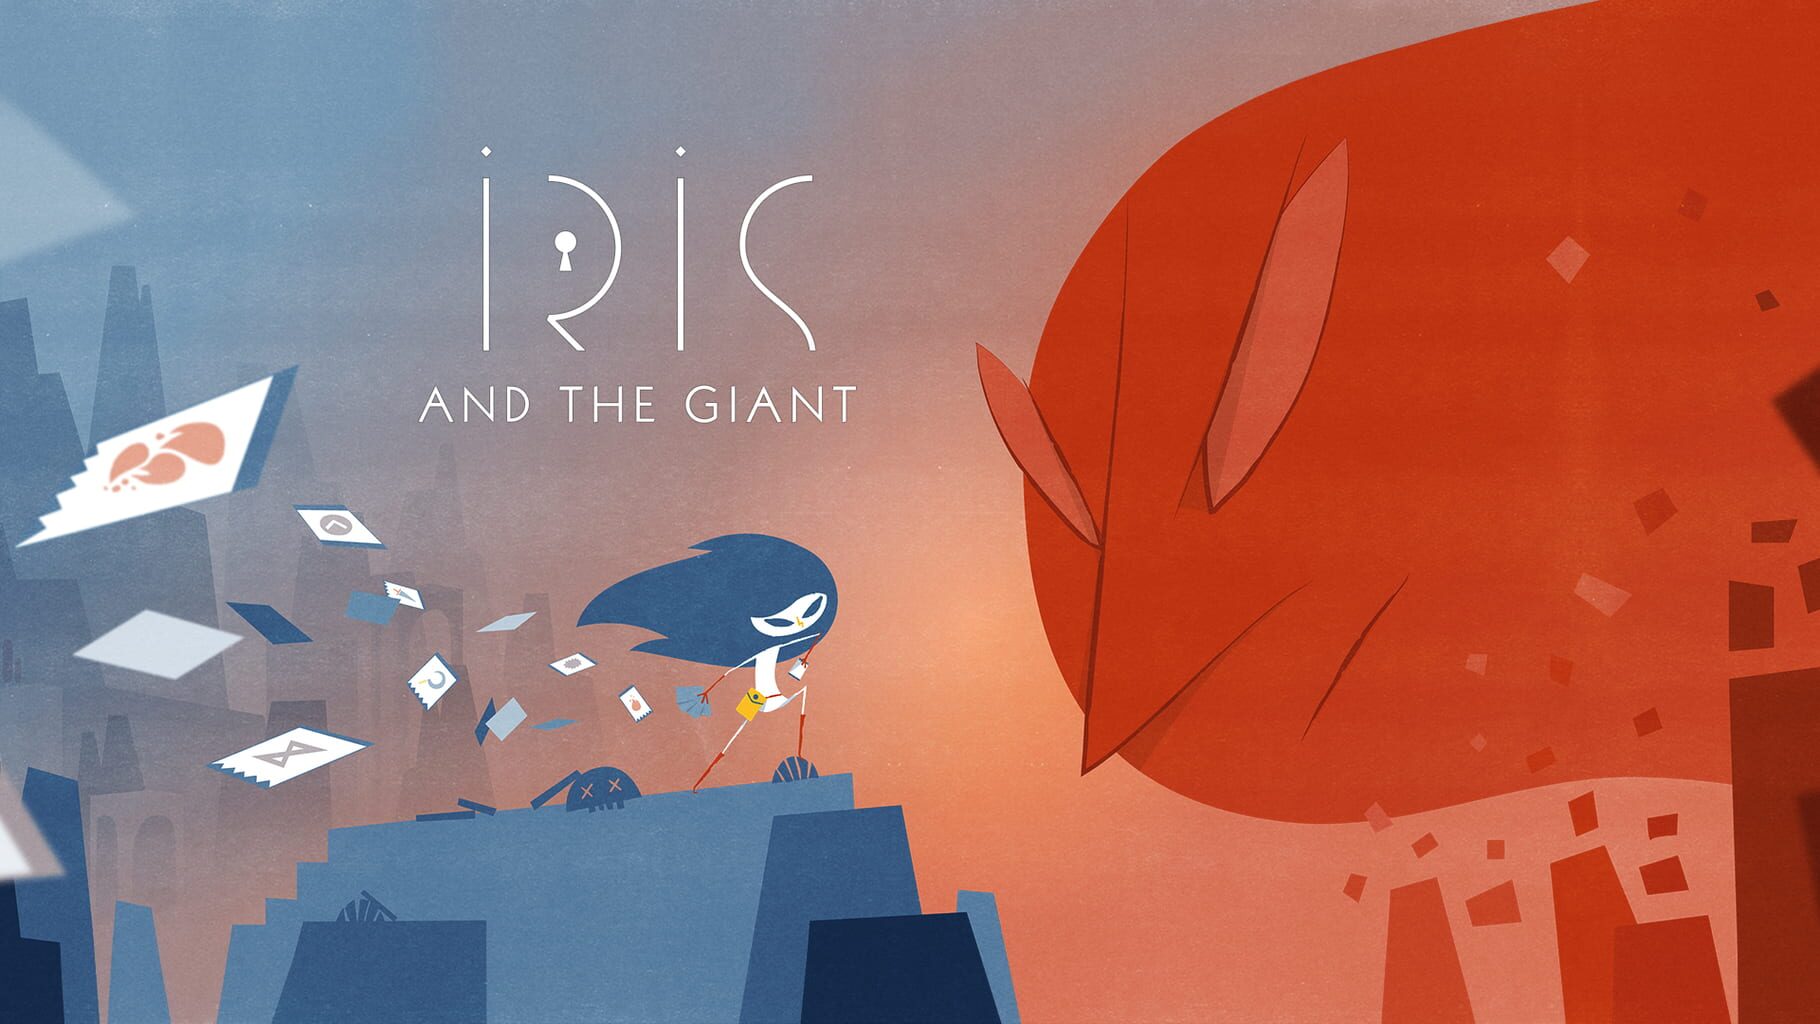 Arte - Iris and the Giant